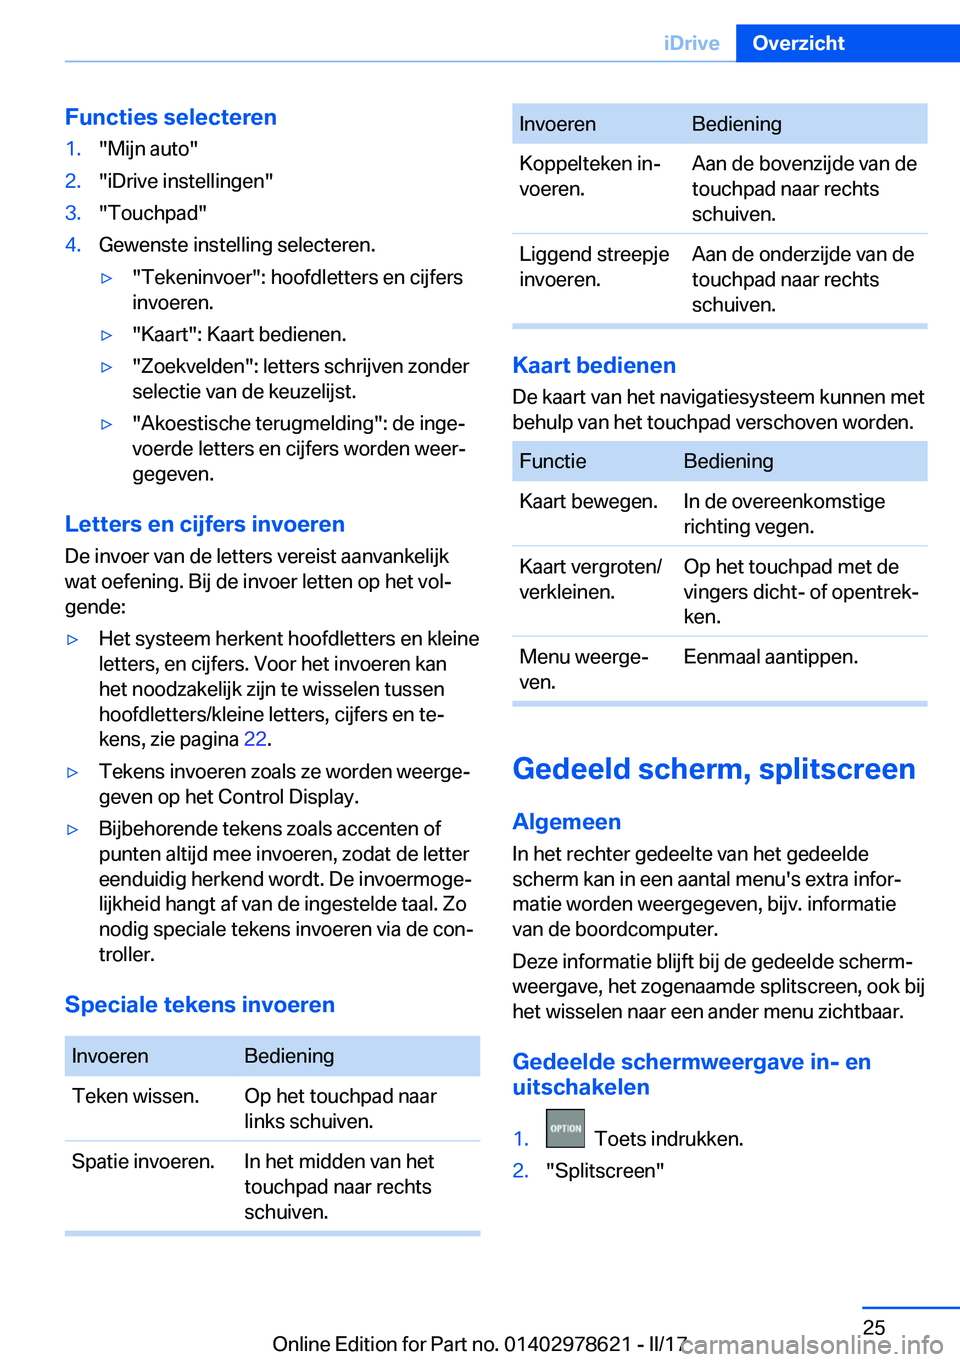 BMW 7 SERIES 2018  Instructieboekjes (in Dutch) �F�u�n�c�t�i�e�s��s�e�l�e�c�t�e�r�e�n�1�.�"�M�i�j�n� �a�u�t�o�"�2�.�"�i�D�r�i�v�e� �i�n�s�t�e�l�l�i�n�g�e�n�"�3�.�"�T�o�u�c�h�p�a�d�"�4�.�G�e�w�e�n�s�t�e� �i�n�s�t�e�l�l�i�n�g